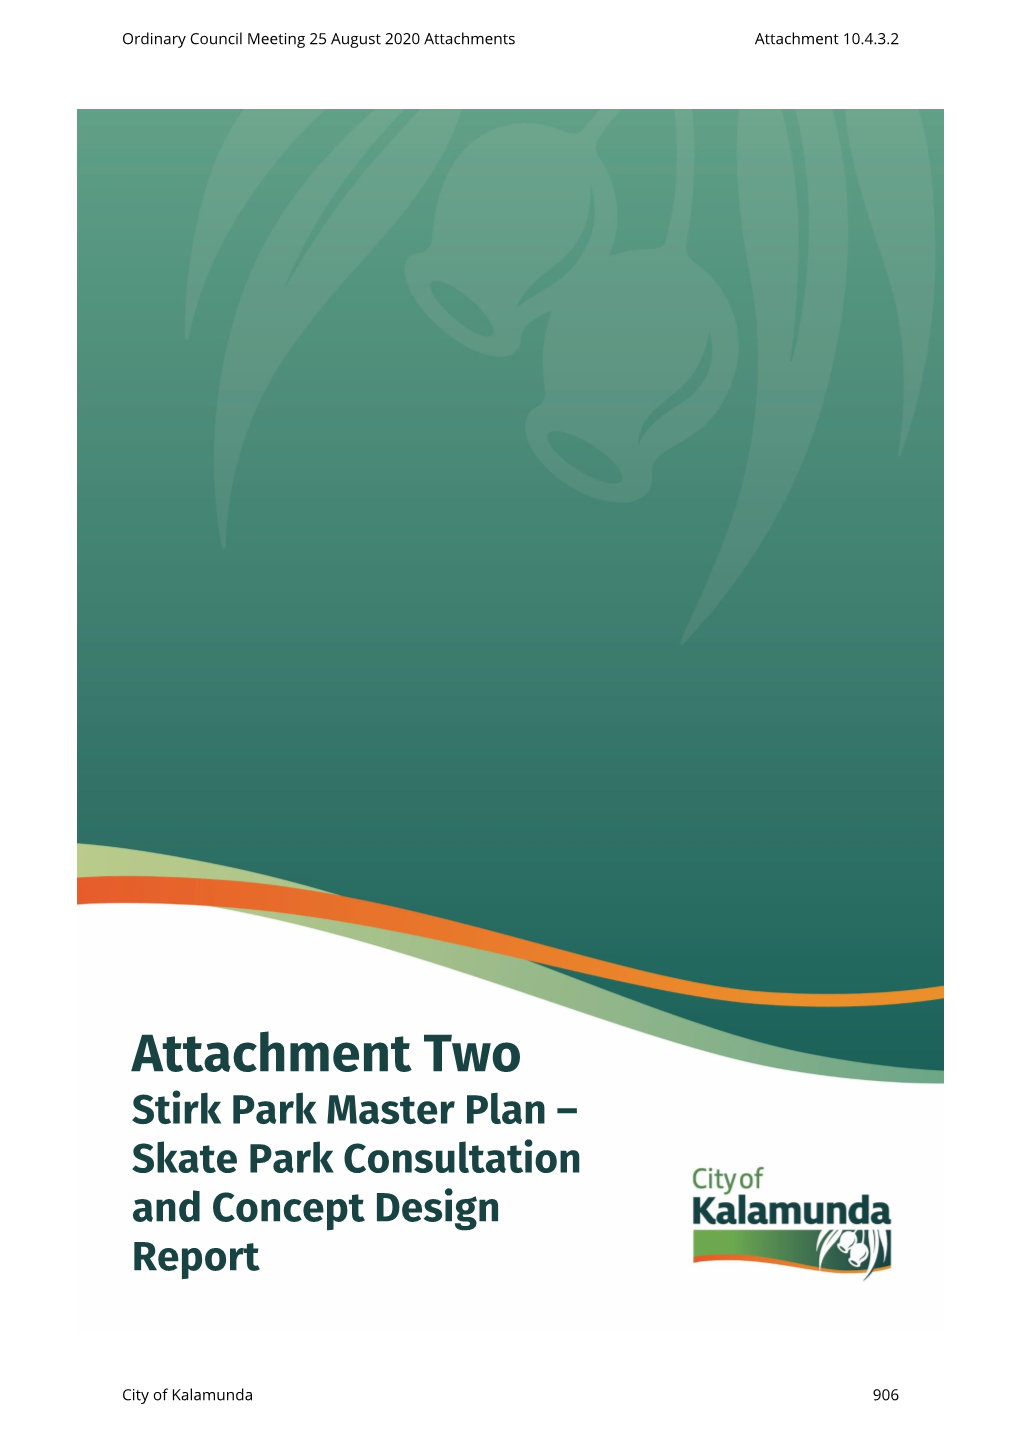 Attachments Attachment 10.4.3.2